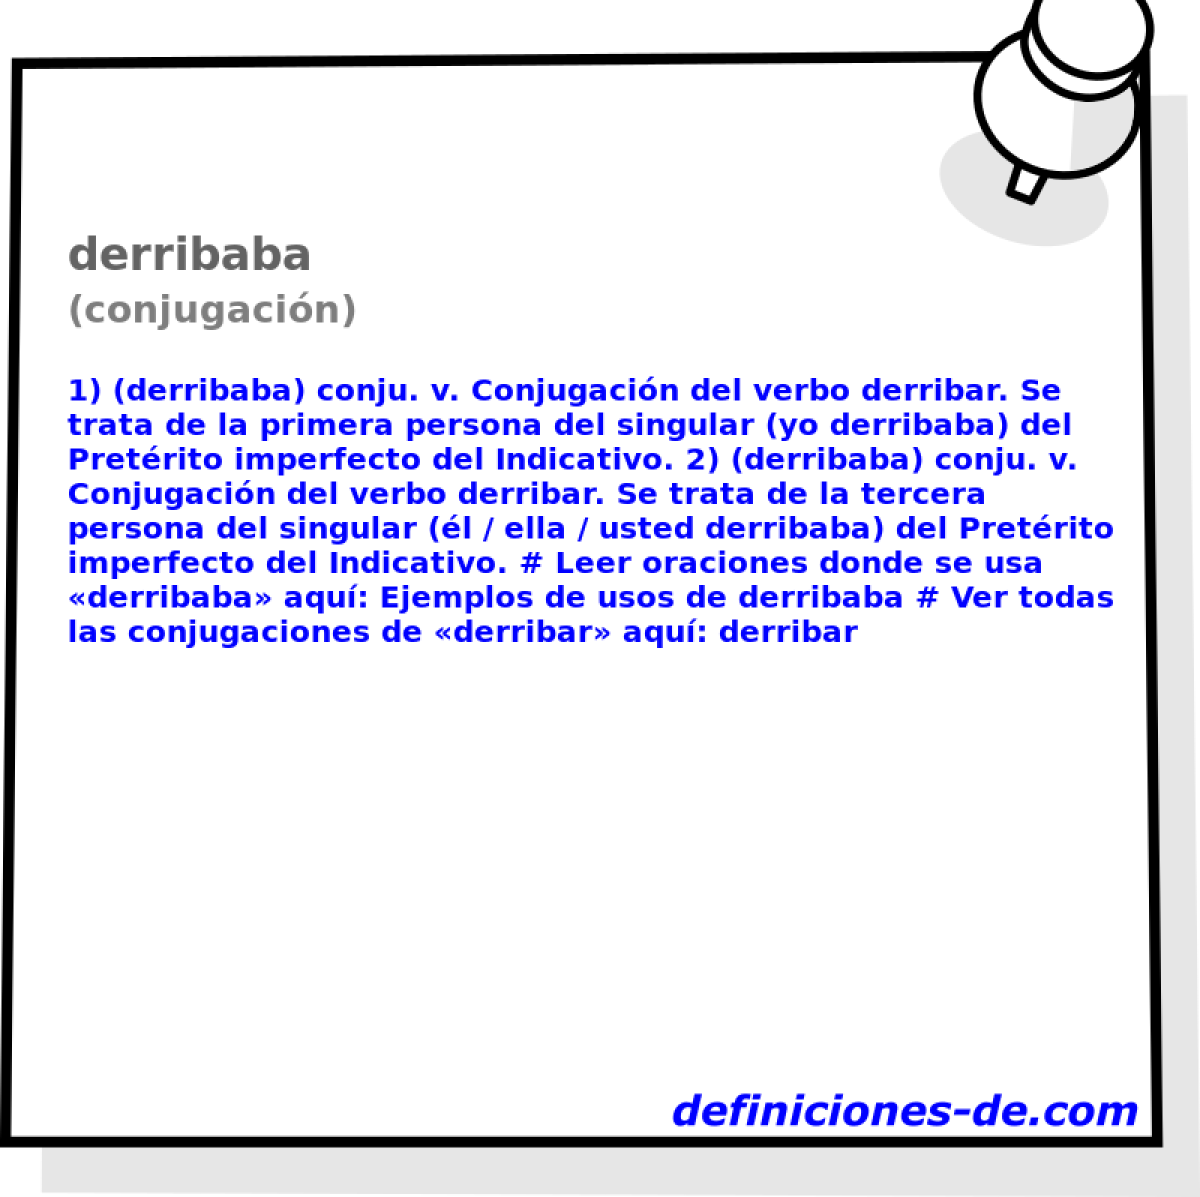 derribaba (conjugacin)